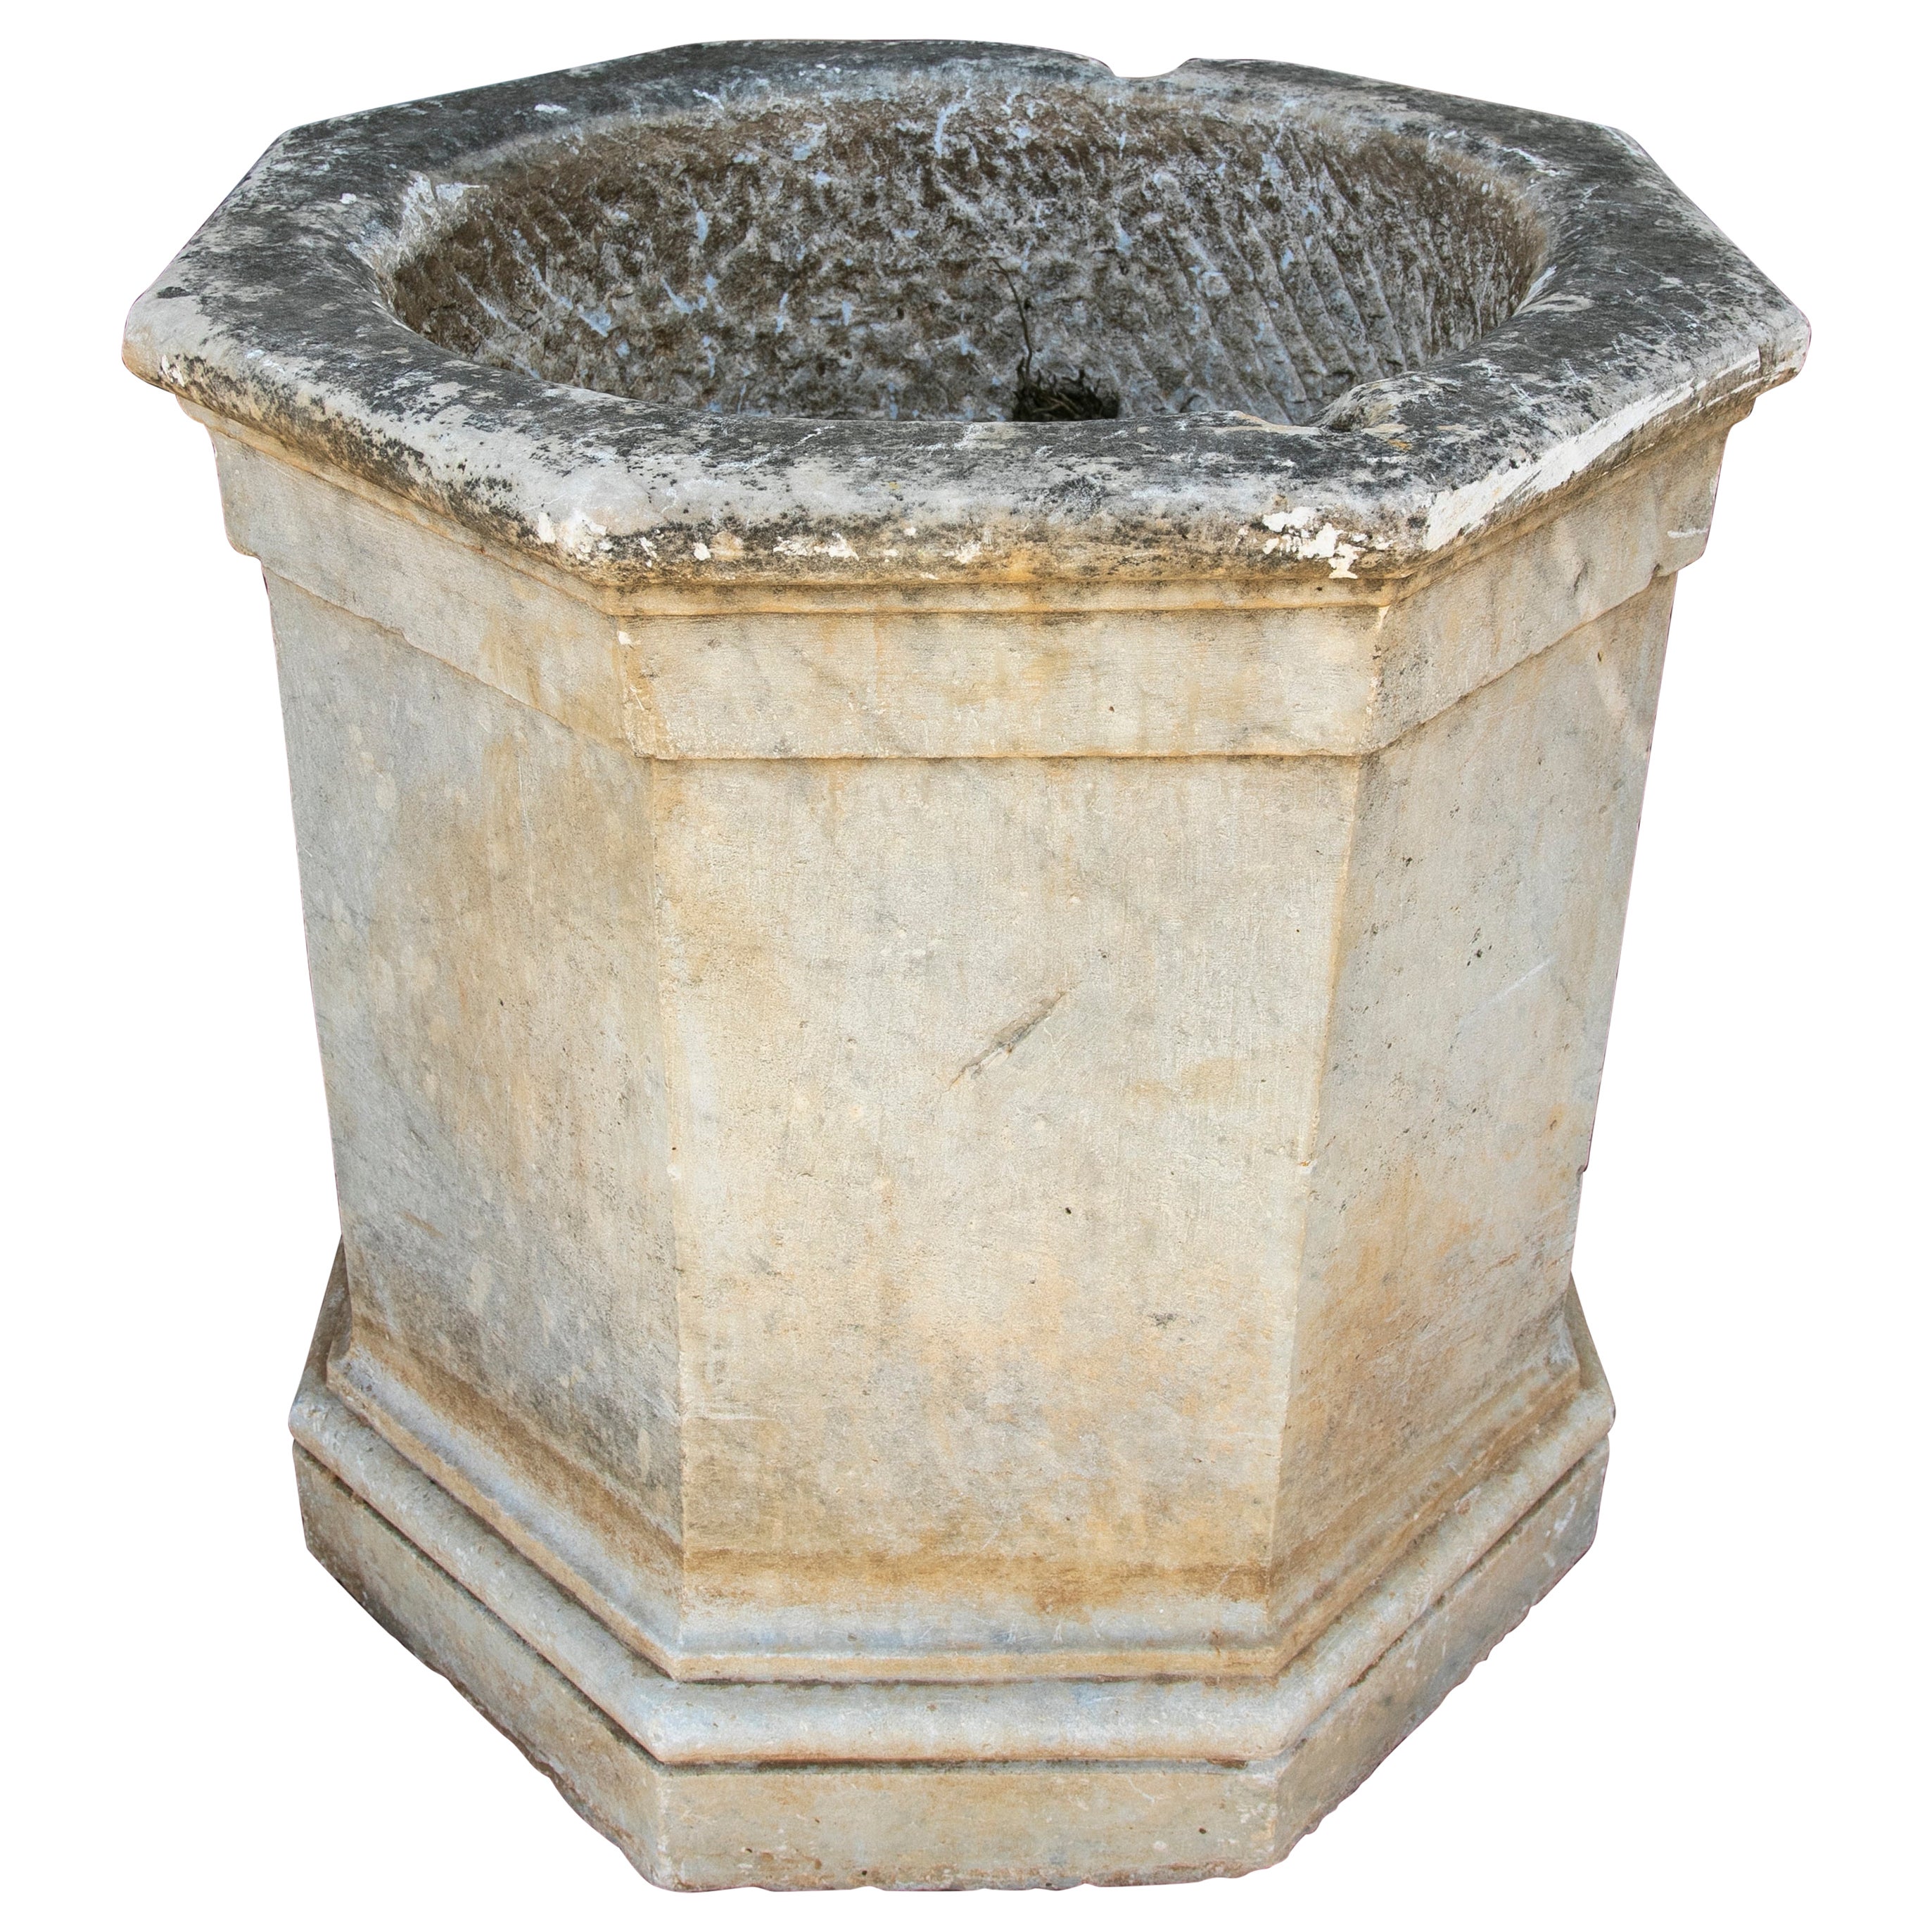 Bec de puits en marbre sculpté à la main en Espagne au 18e siècle